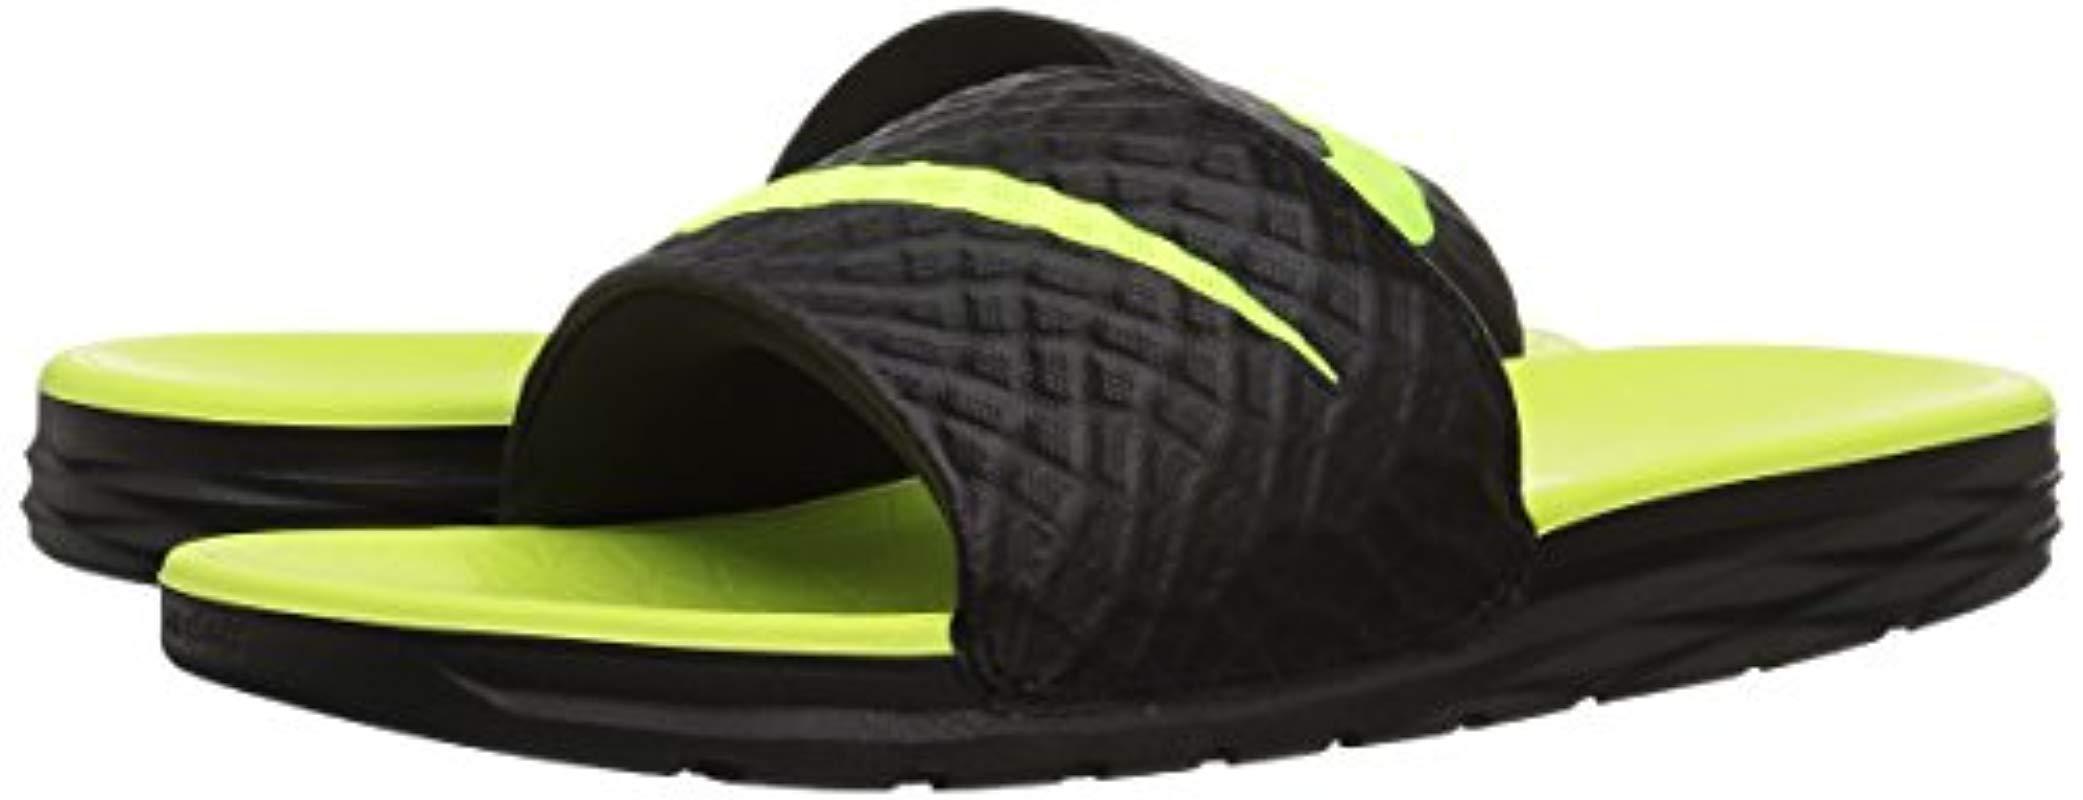 Nike Benassi Solarsoft Slide Beach & Pool Shoes in Black for Men - Lyst